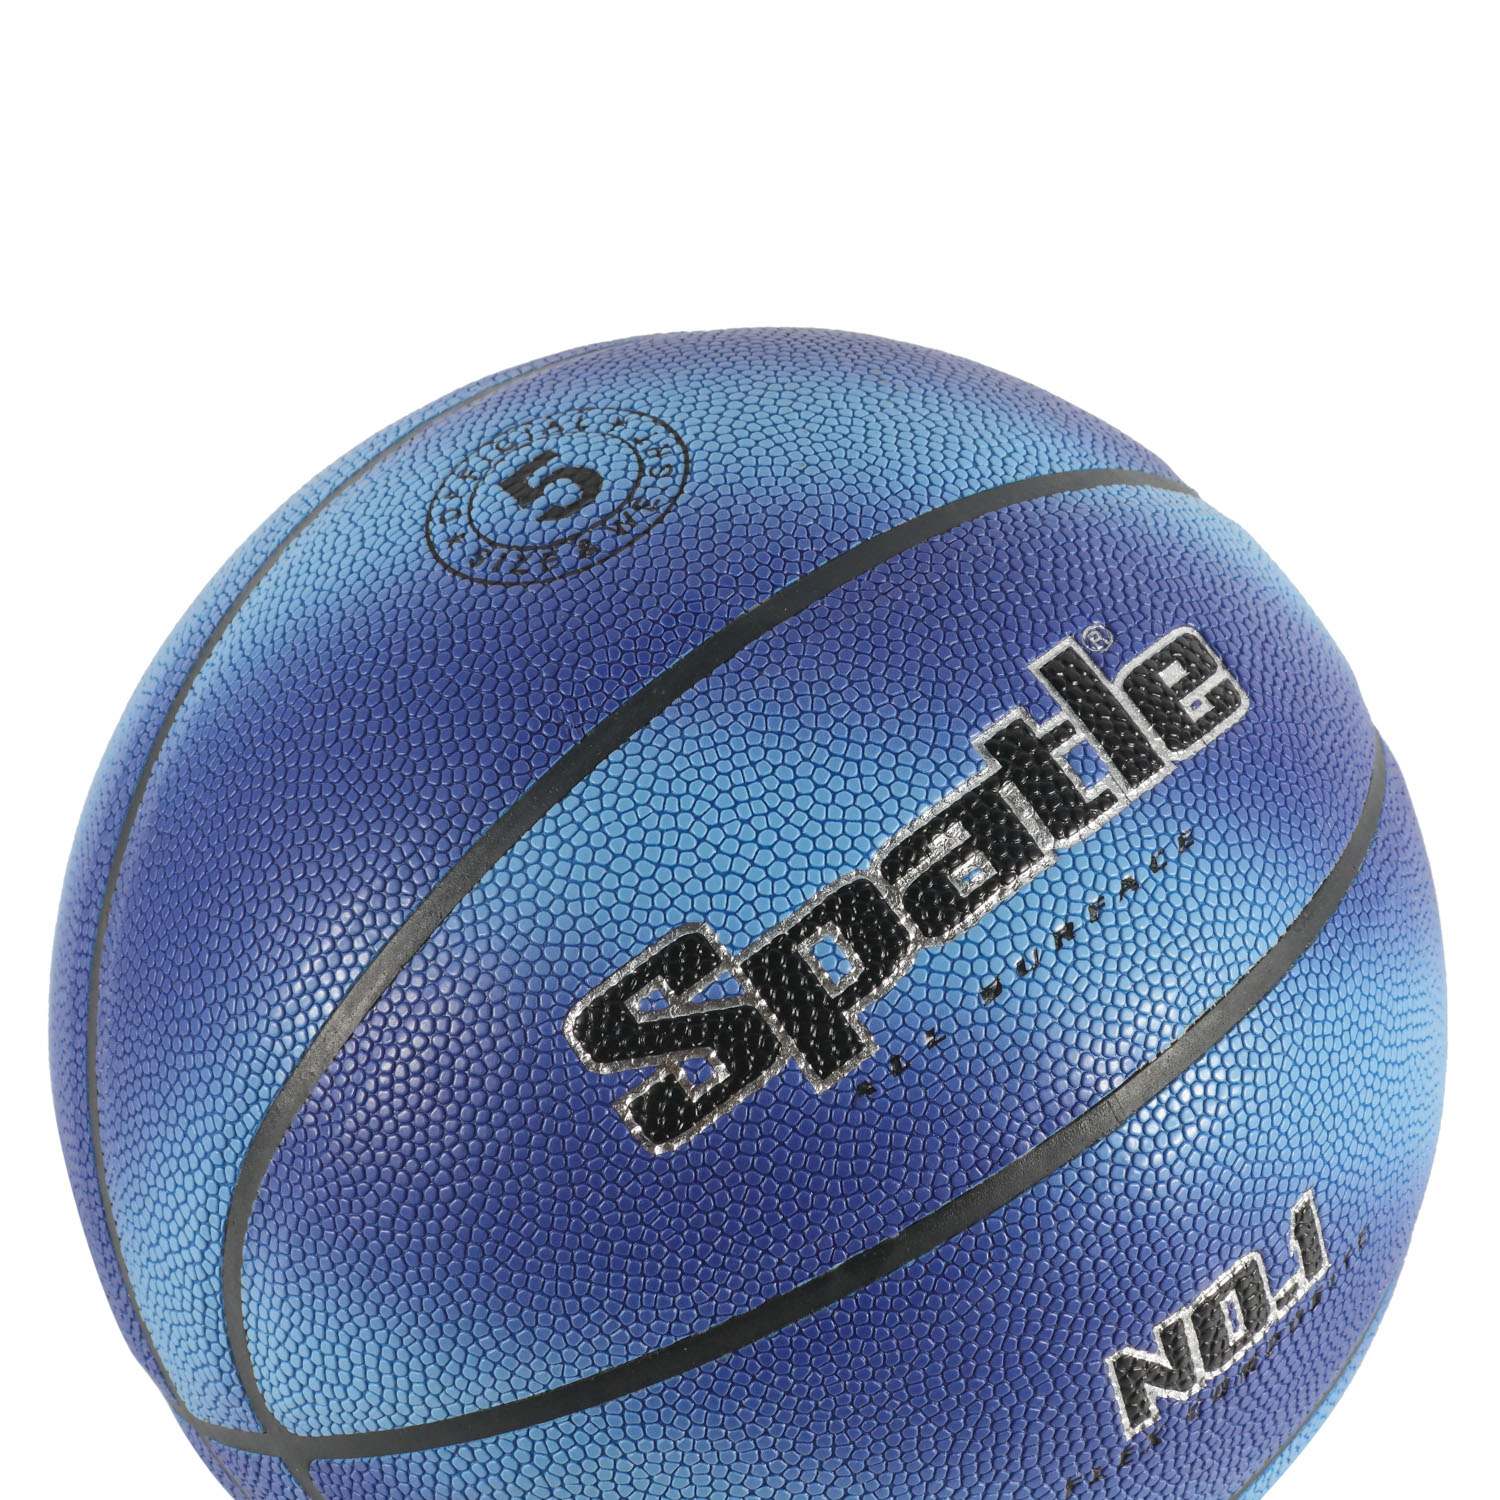 Logotipo personalizado laminado PU de baloncesto de tamaño oficial al aire libre